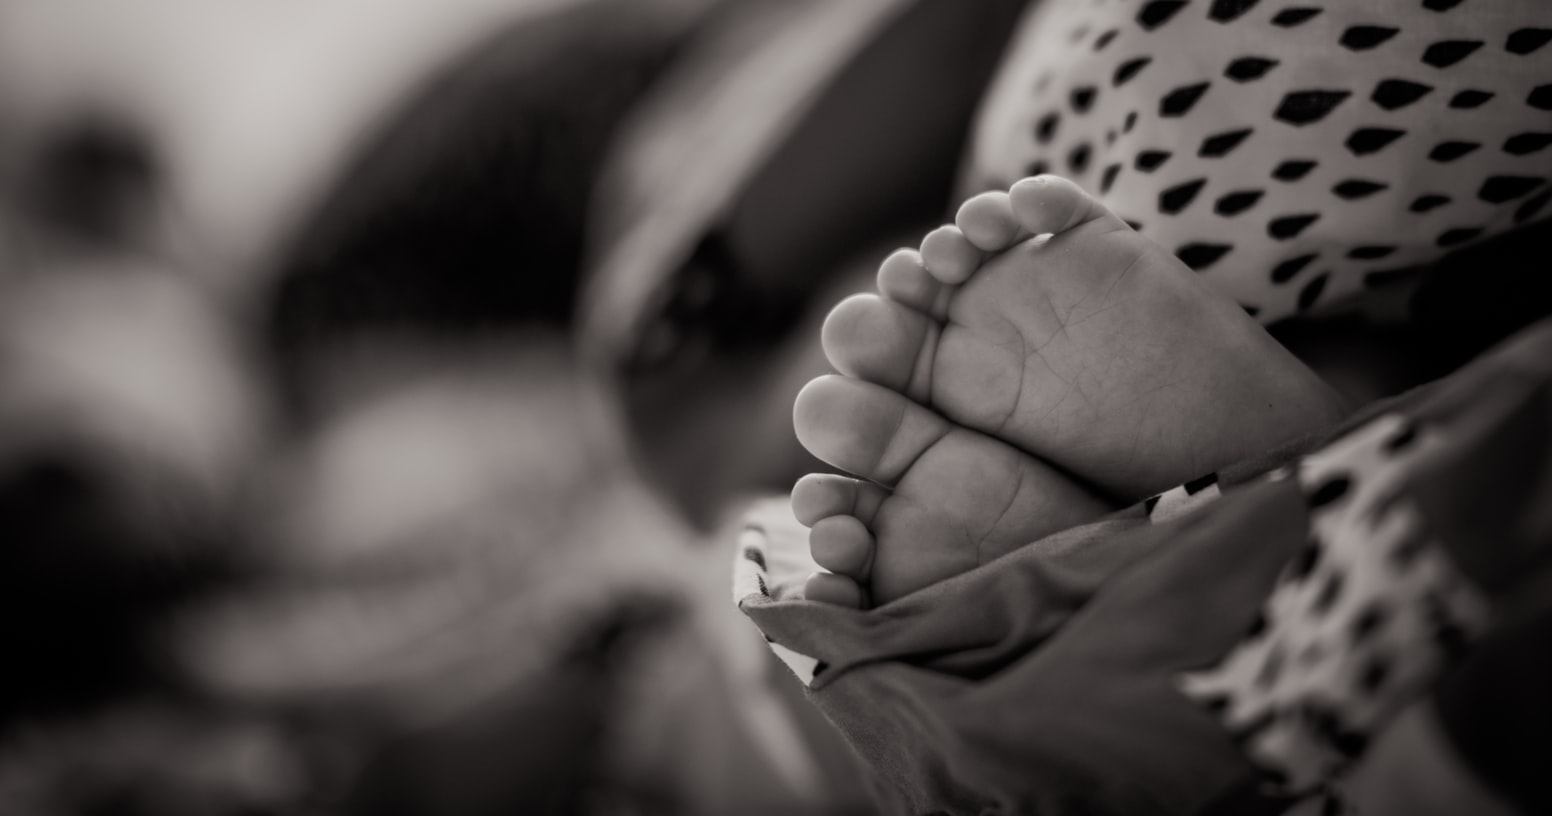 Μωρό Μόρια: Τι λέει ο διευθυντής των Γιατρών Χωρίς Σύνορα για το νεκρό βρέφος